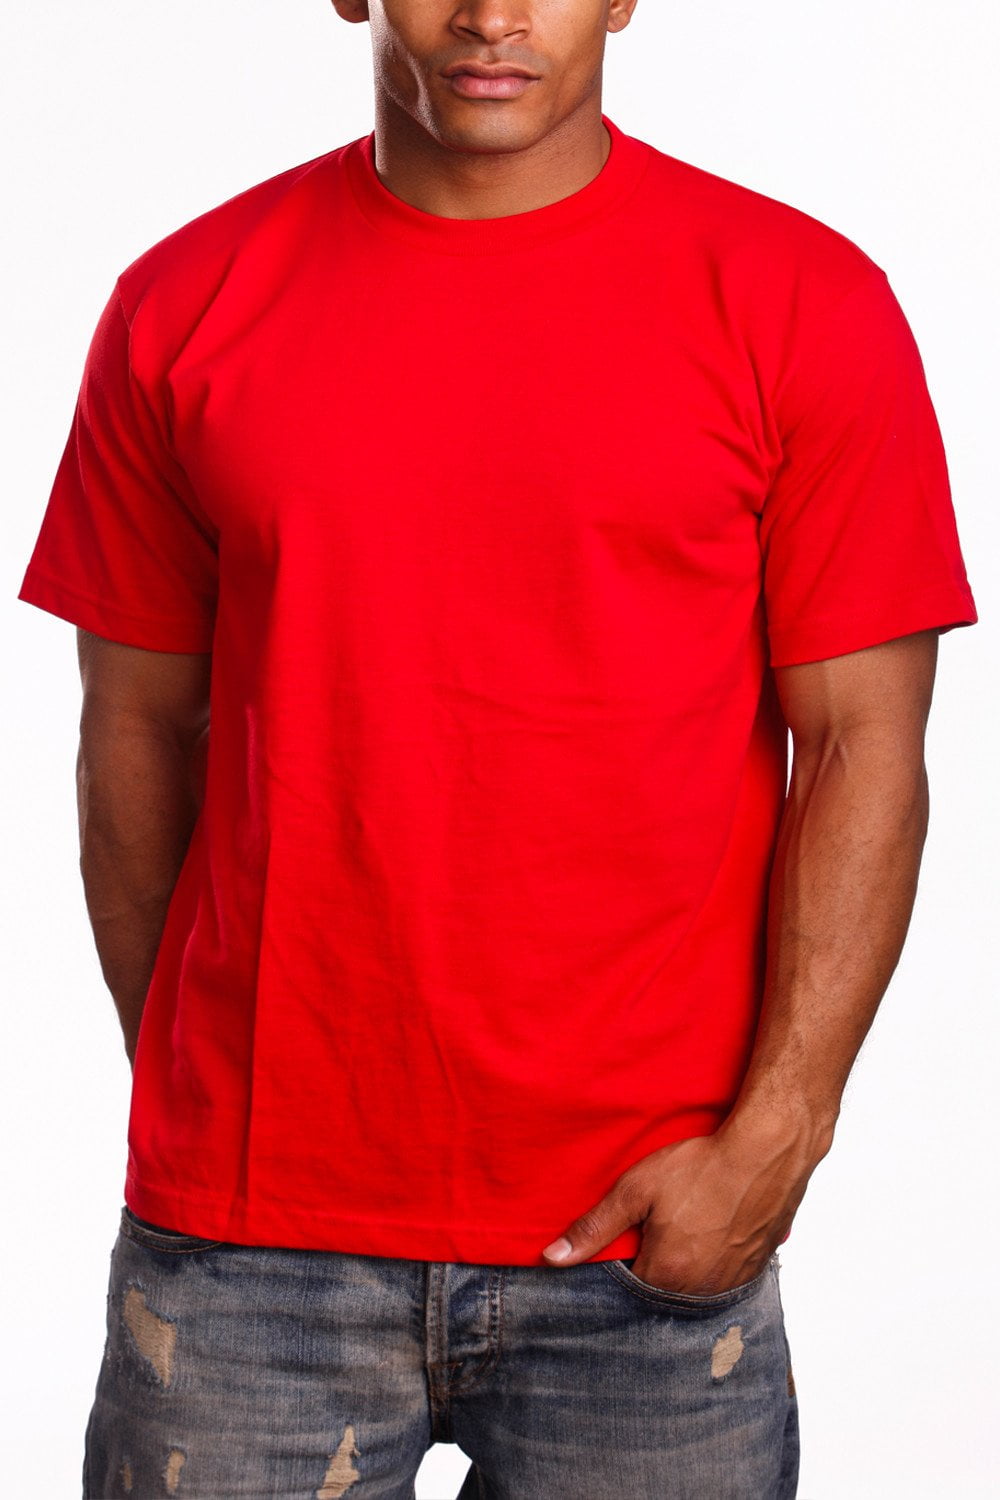 3xl red shirt